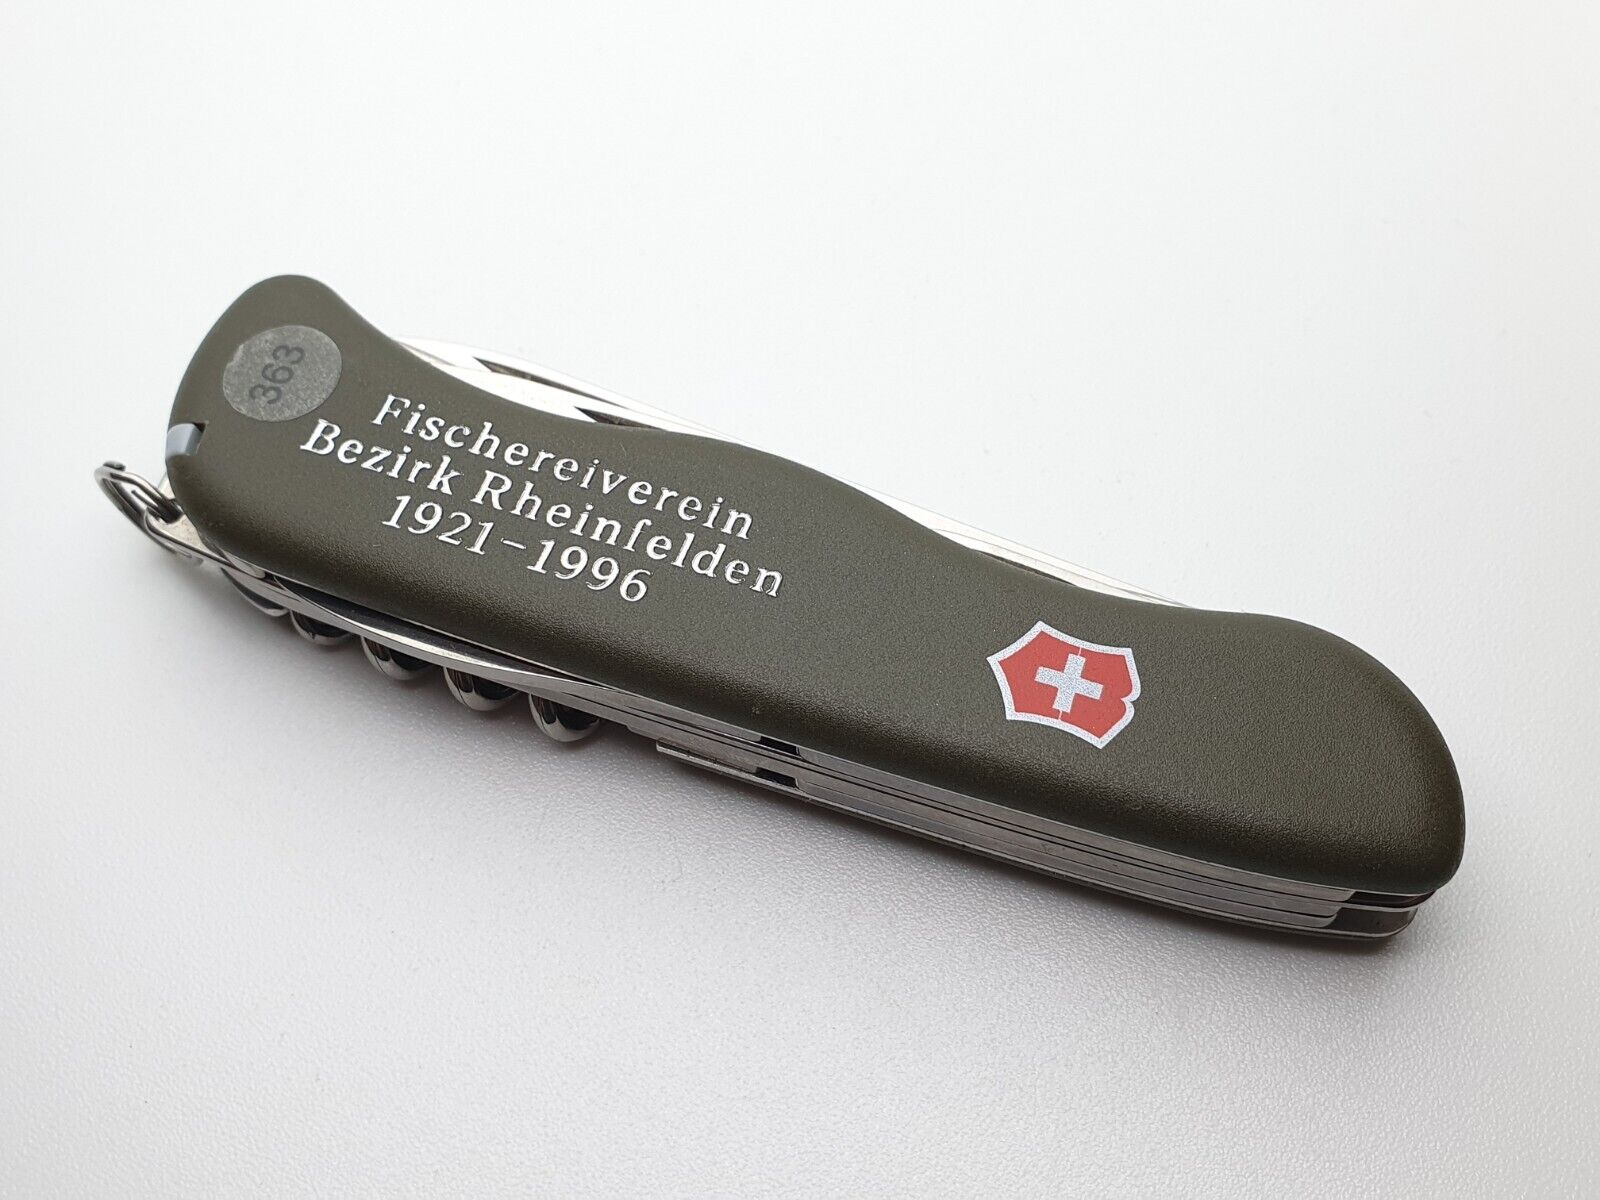 Victorinox Fischereiverein Bezirk Rheinfelden 1921-1996 Swiss Knife